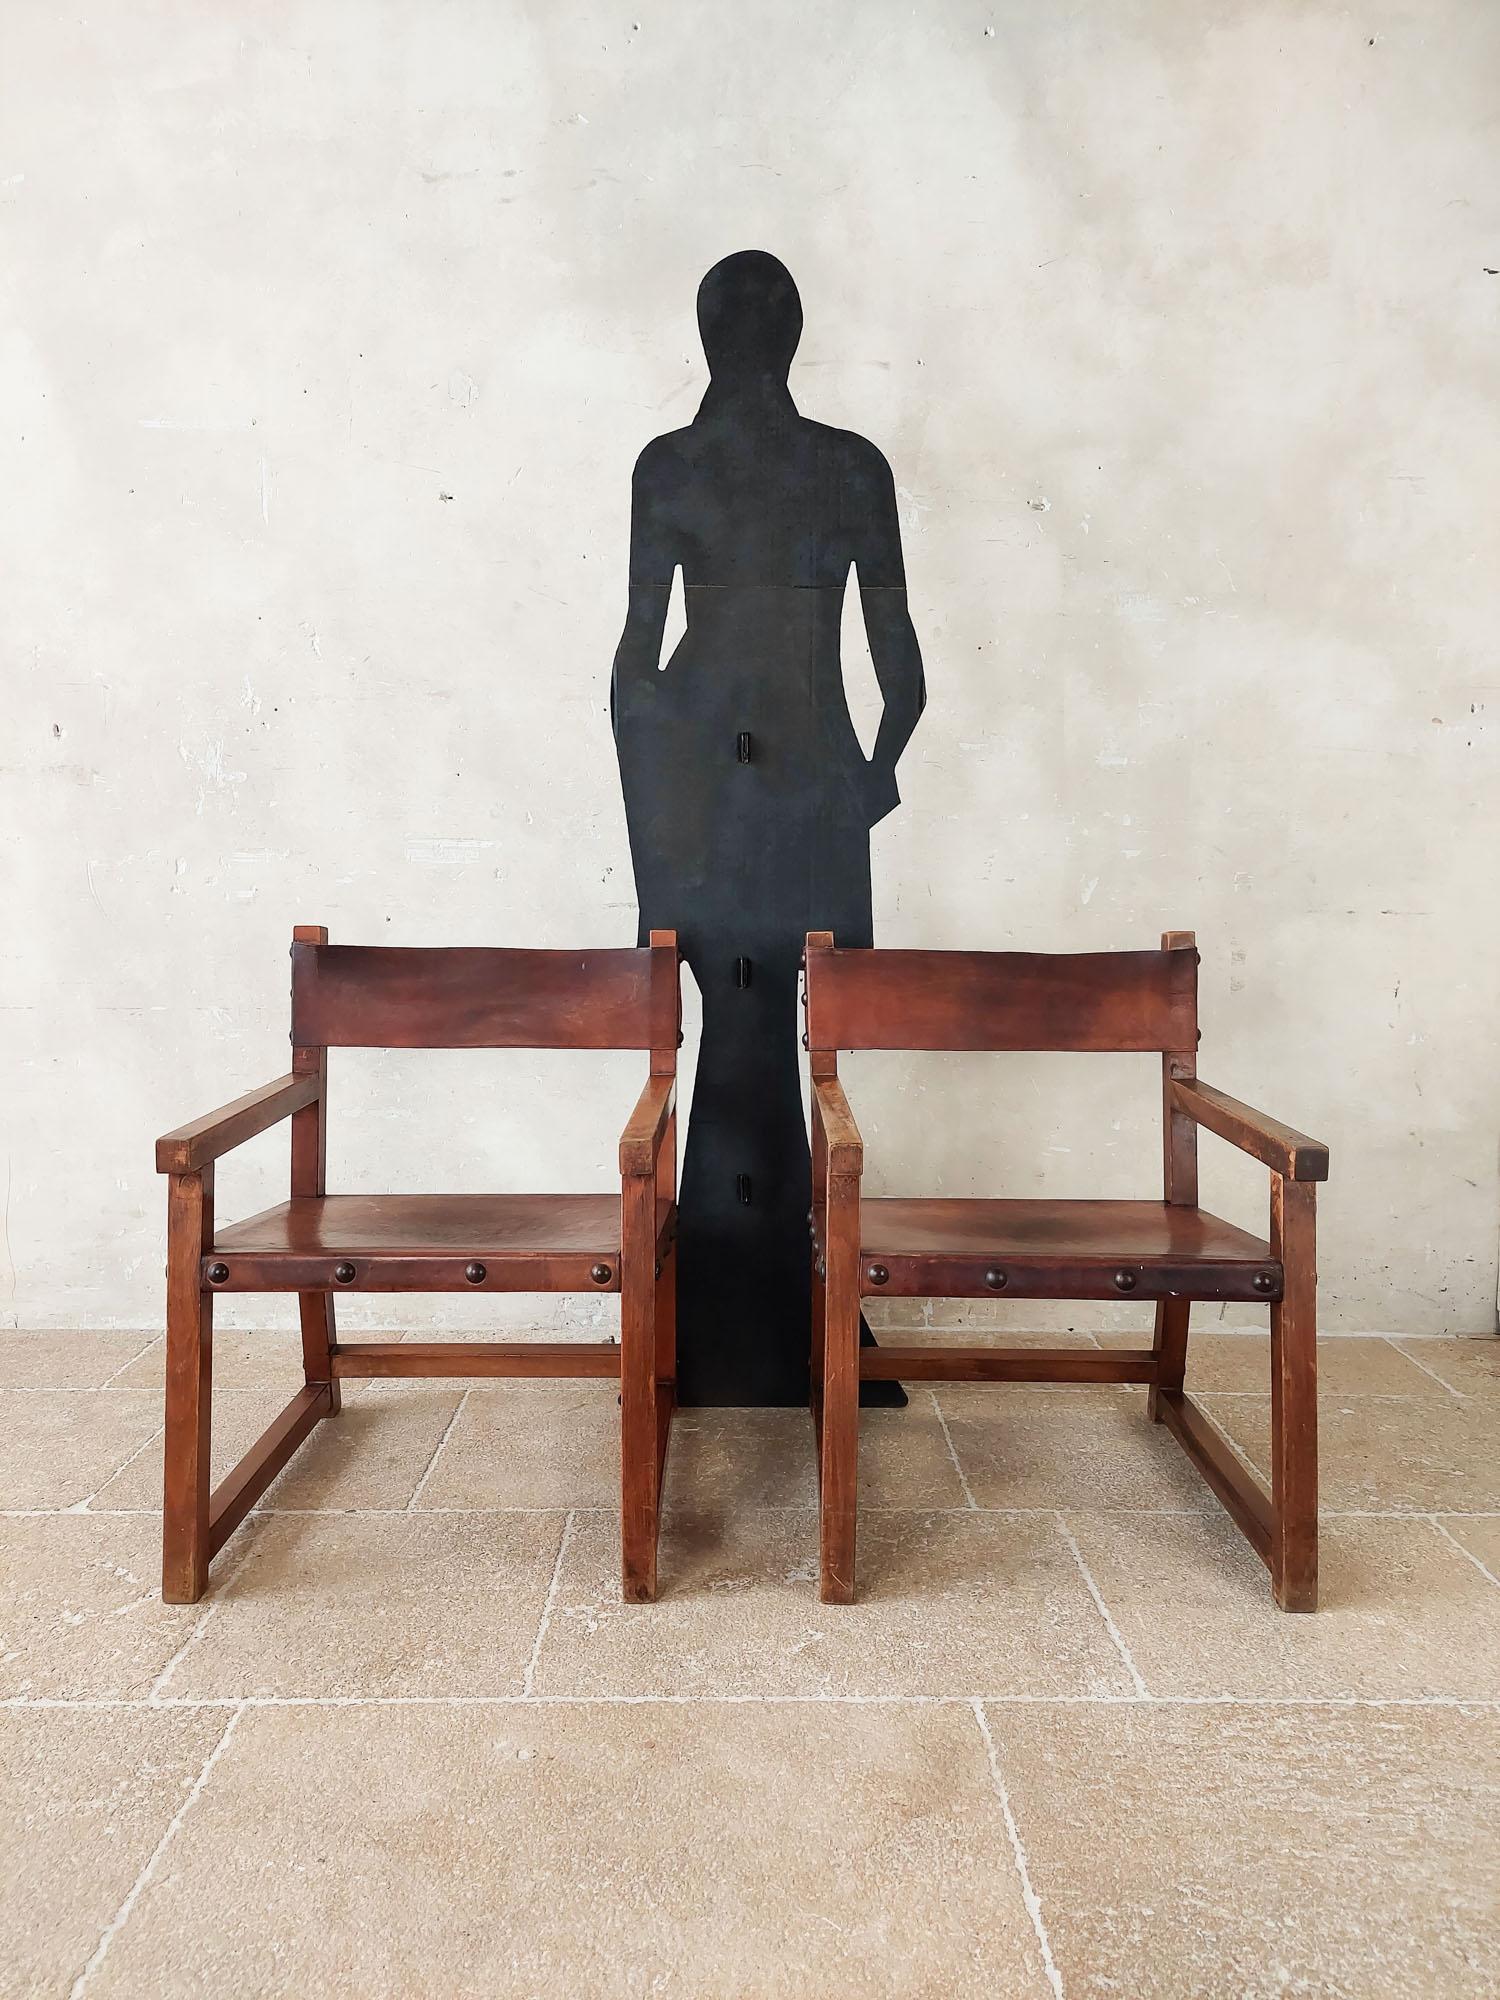 Paar spanische Vintage-Sessel aus Leder und Holz im Stil von BIOSCA, Spanien der 1970er Jahre. Diese robusten brutalistischen Loungesessel sind aus schönem Sattelleder gefertigt, das mit Eisennägeln mit dem Eichengestell verbunden ist. 
Der Preis